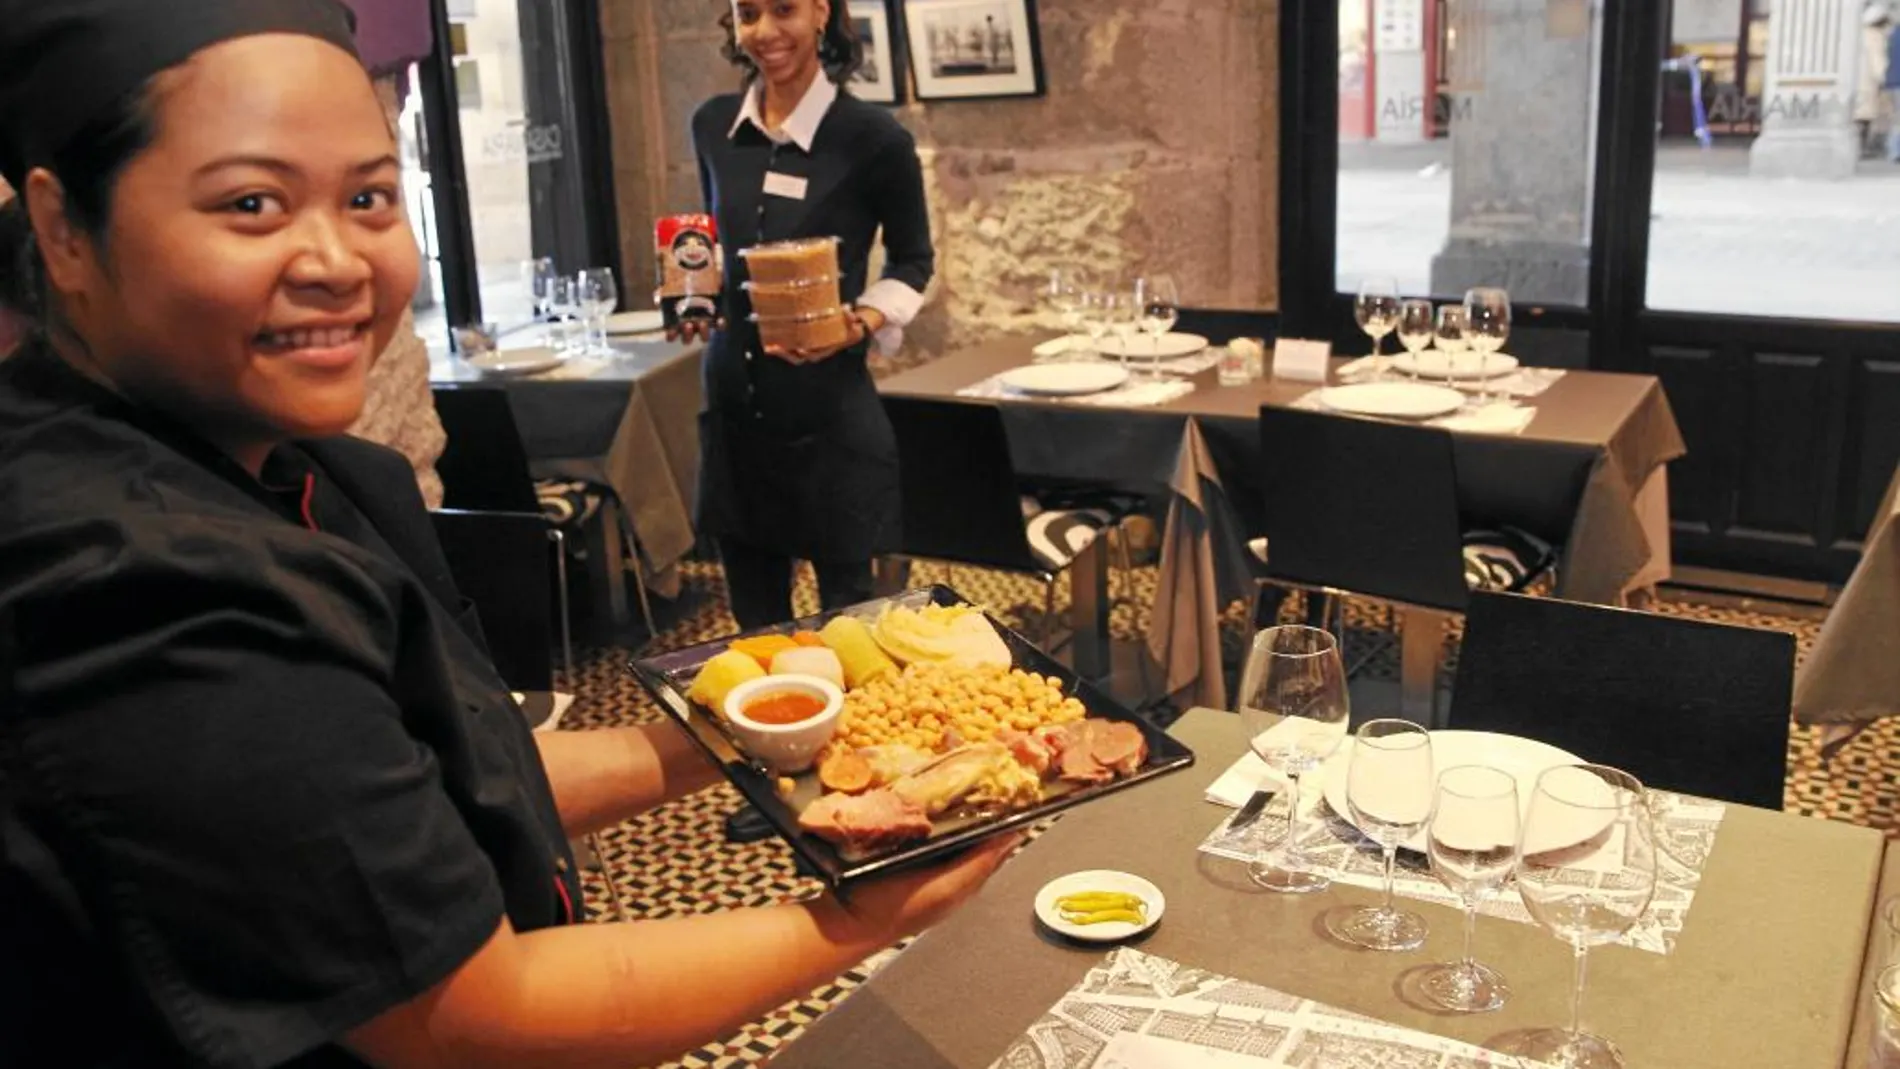 Sólo un simbólico restaurante en la céntrica Plaza Mayor, Casa María, sirve desde hace unas semanas el cocido 100% madrileño